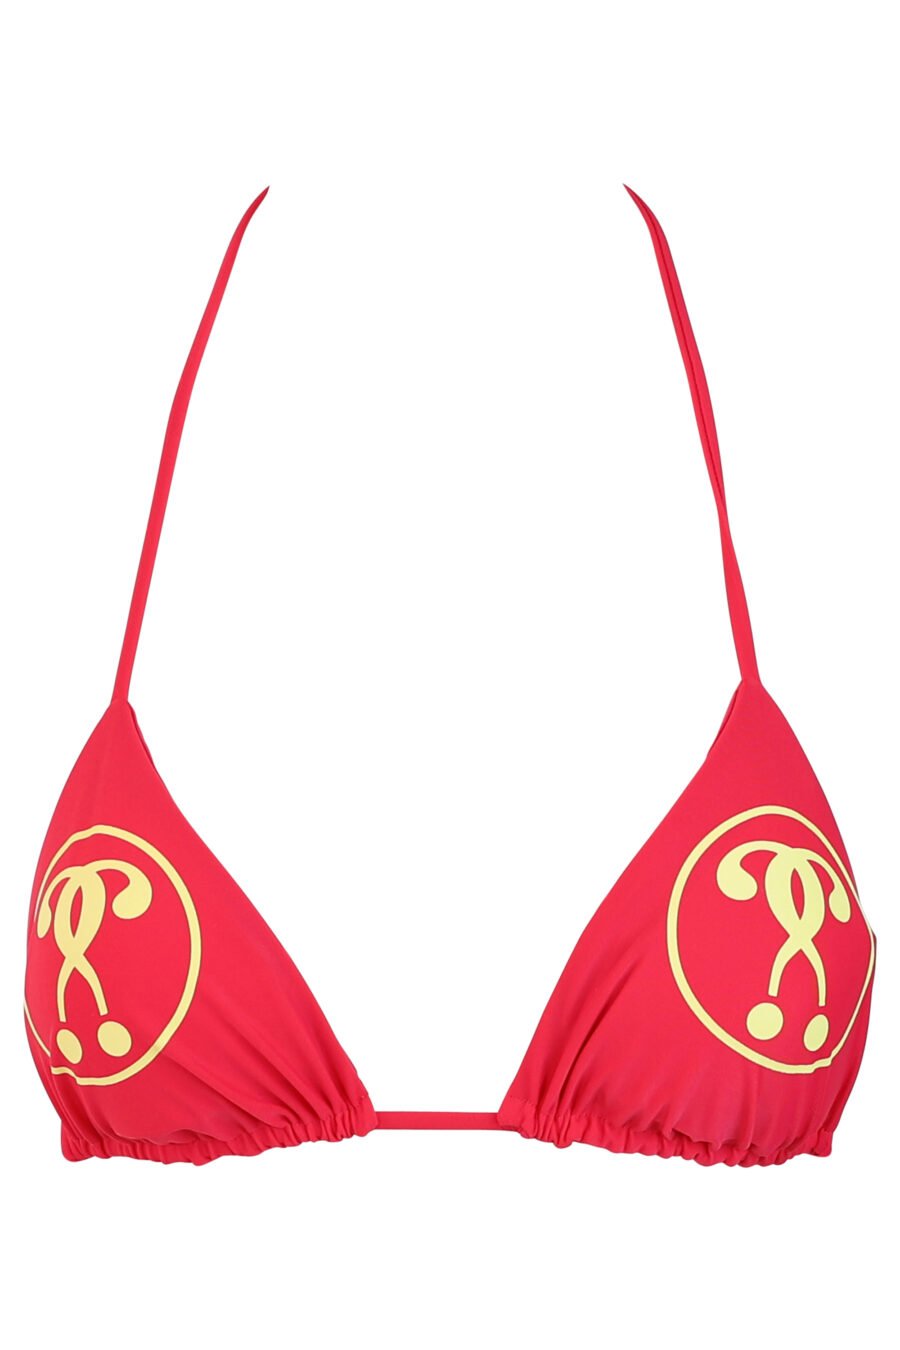 Haut de bikini fuchsia avec logo jaune à double question - IMG 0678